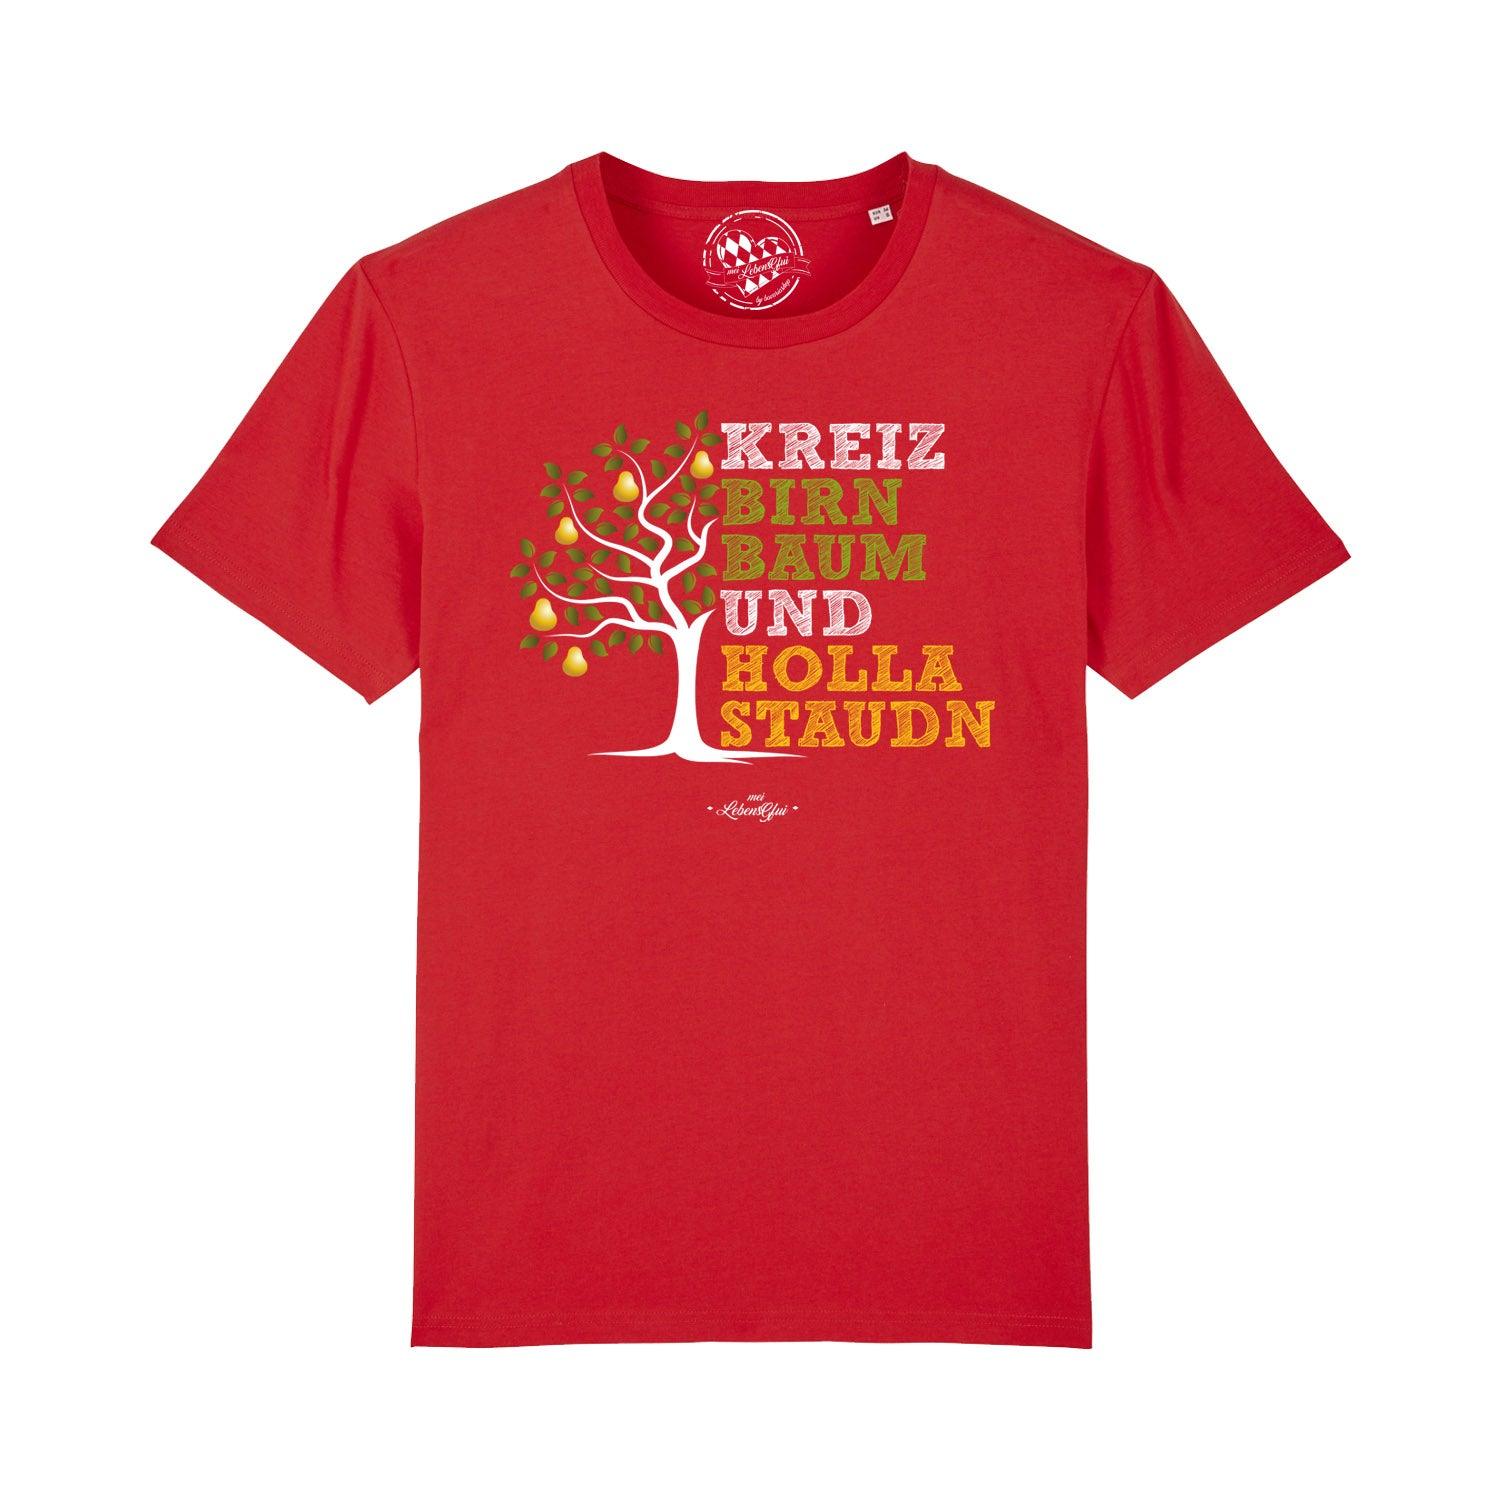 Herren T-Shirt "Kreizbirnbaum" - bavariashop - mei LebensGfui